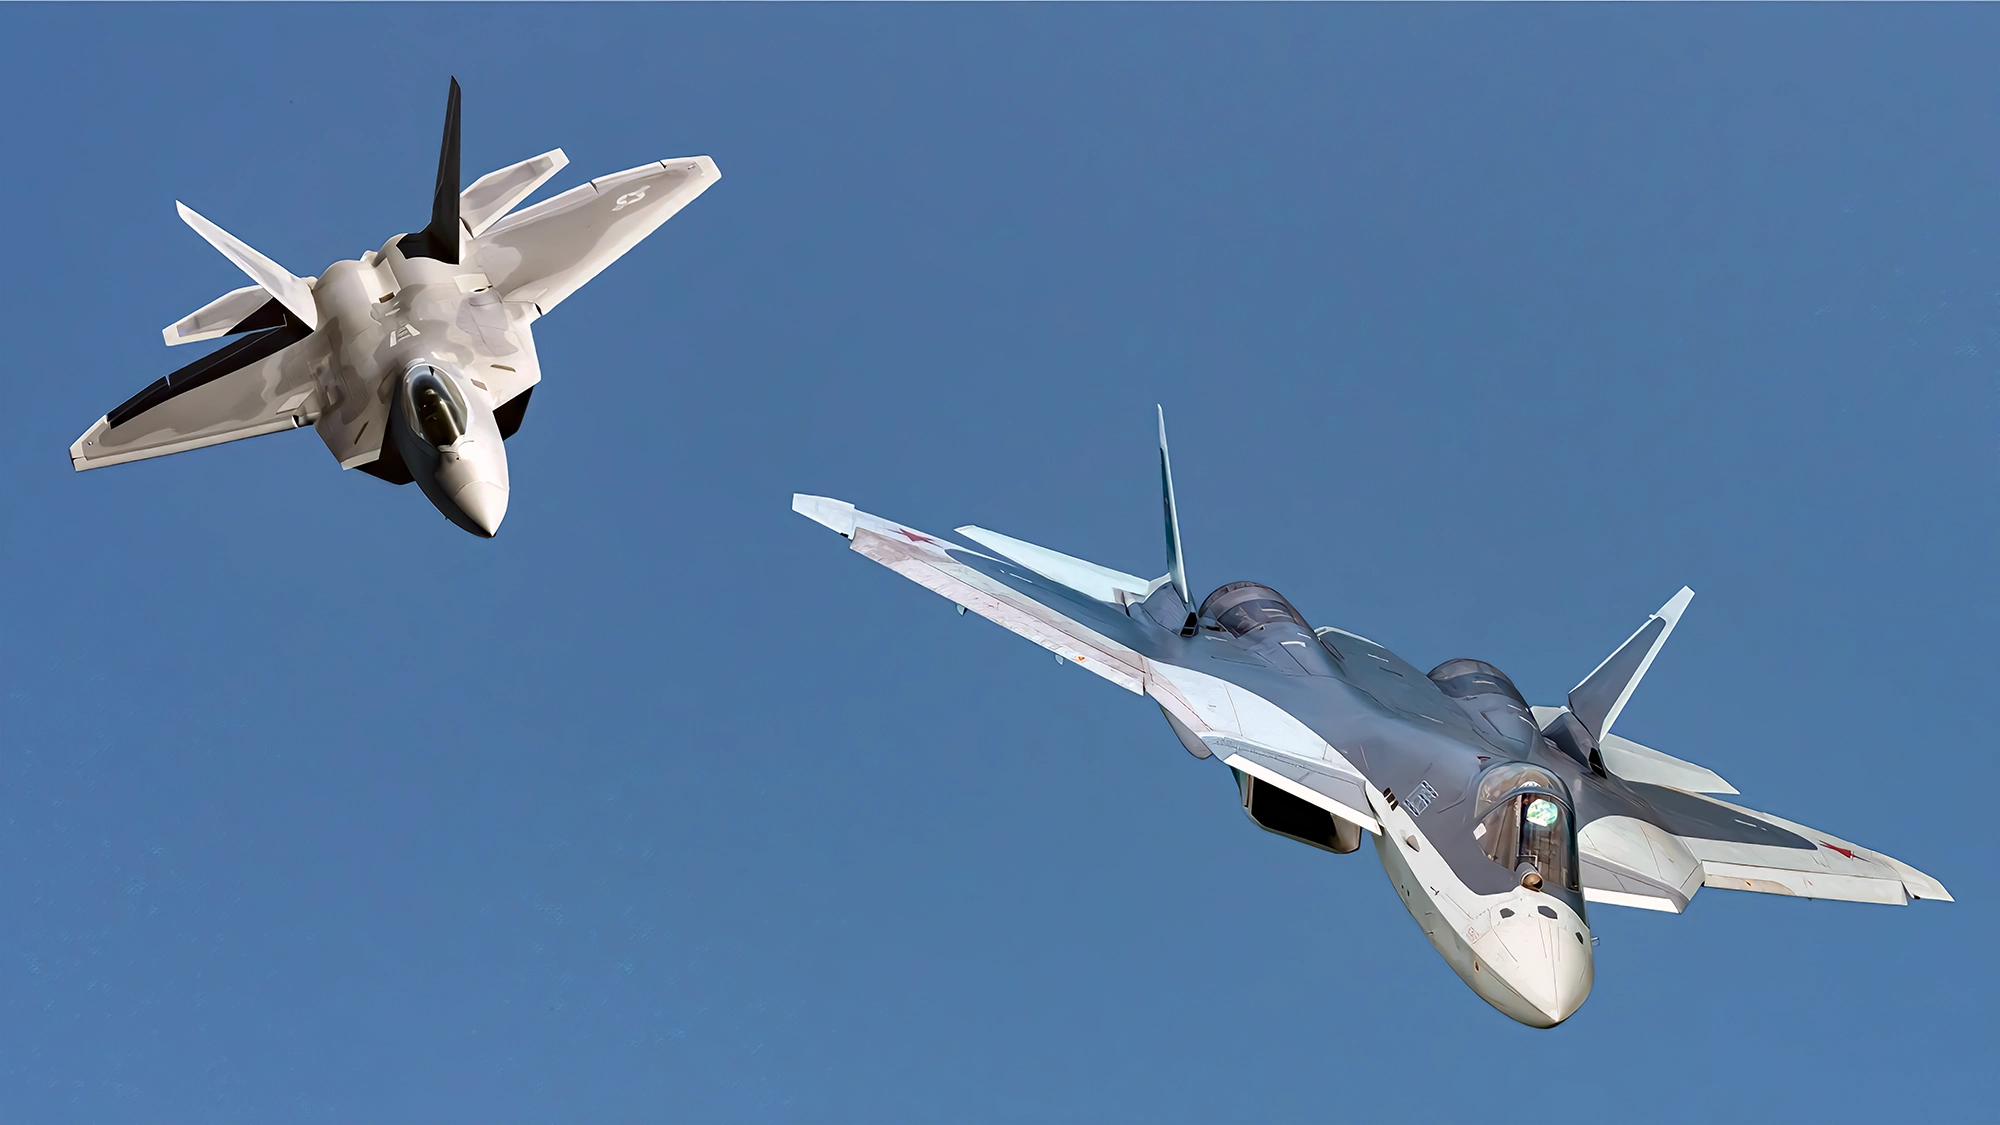 Batalla aérea entre el Su-57 de Rusia y el F-22 furtivo de Estados Unidos ¿Quién gana?